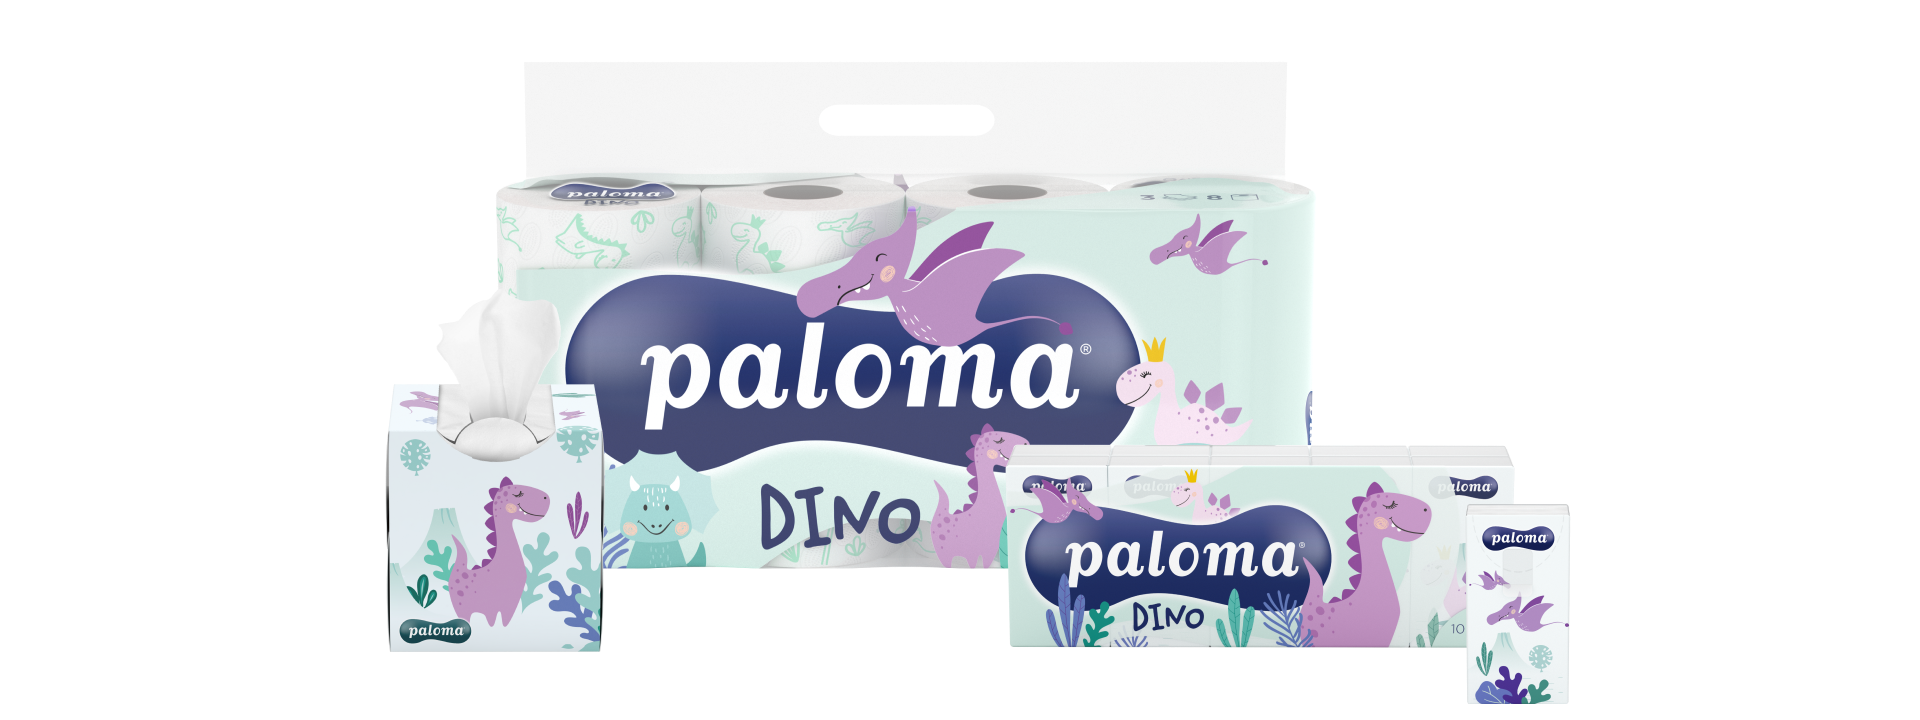 Paloma Dino Category